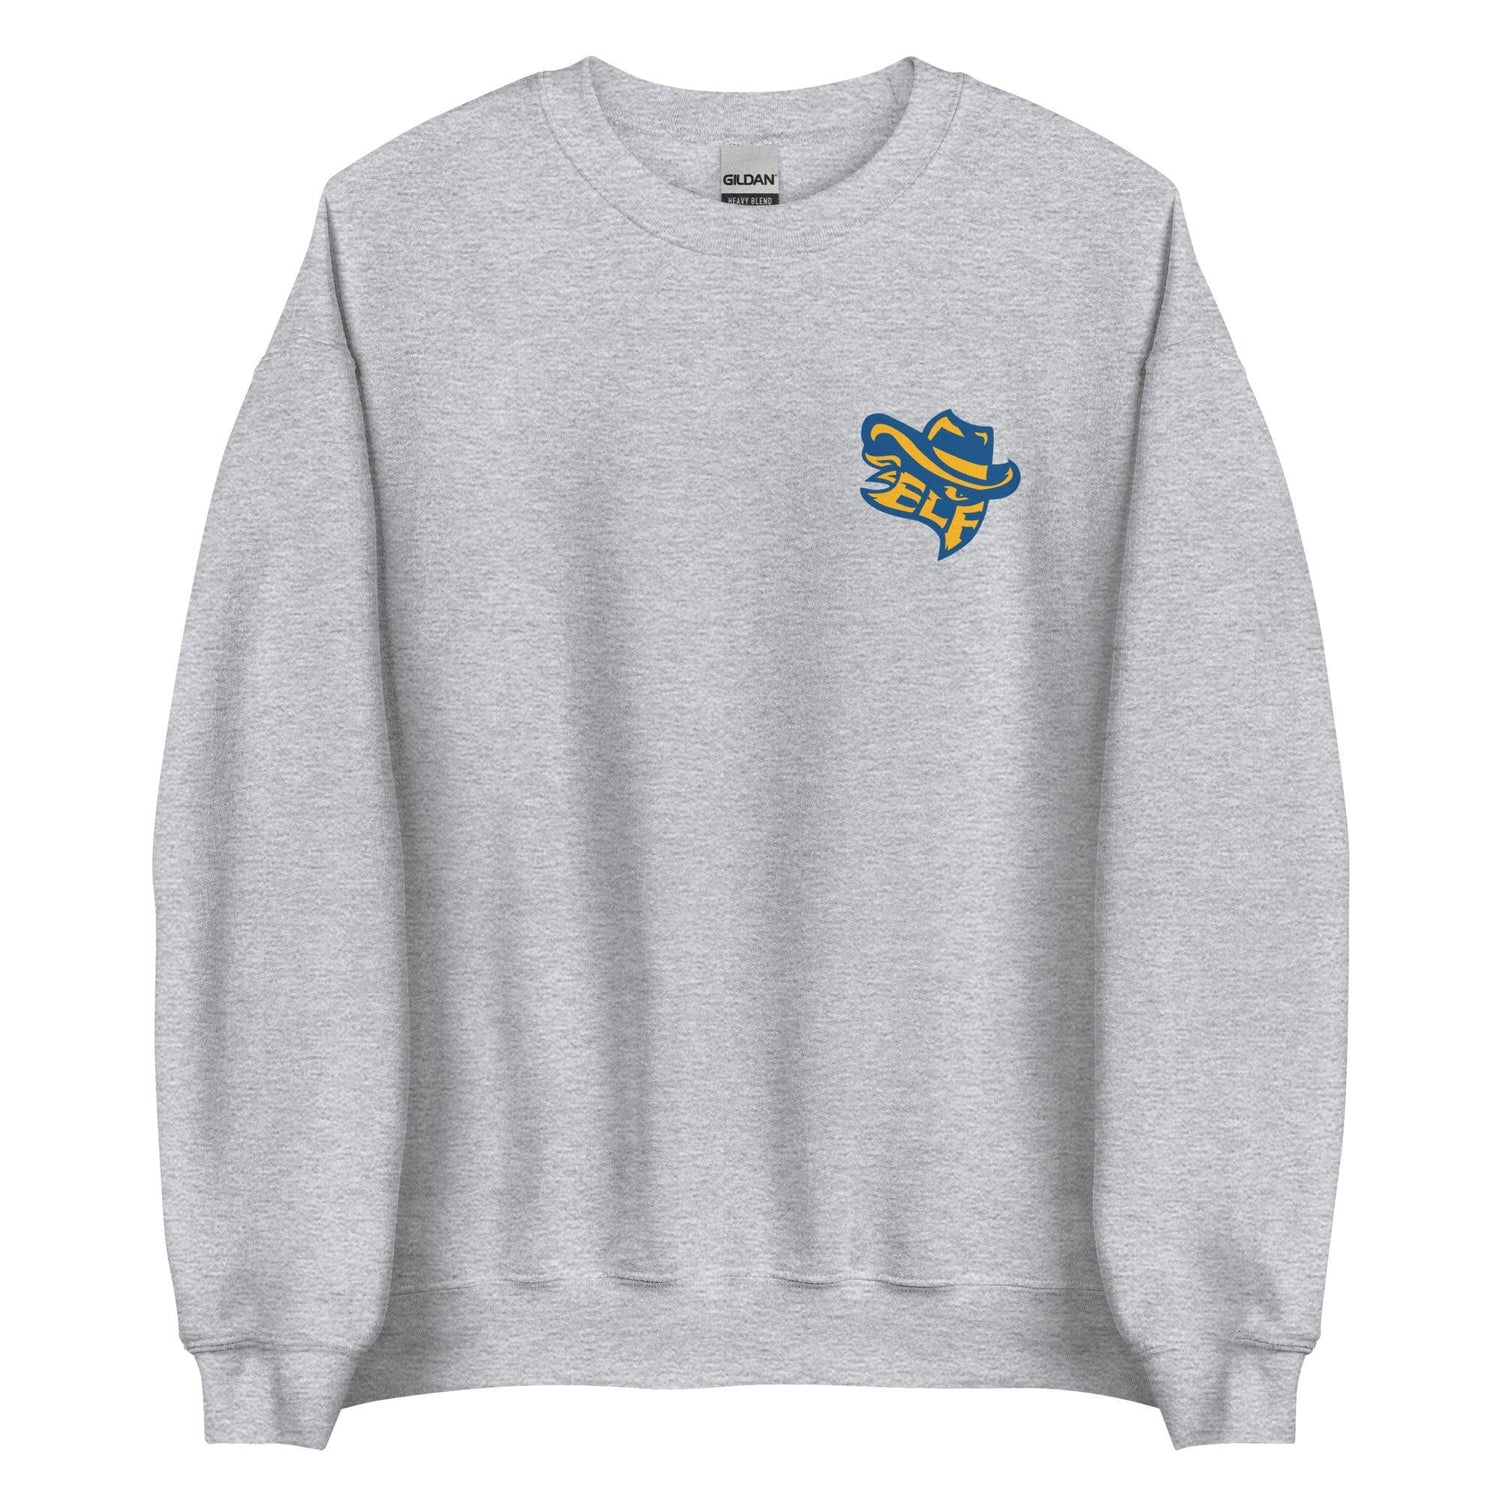 Evan Ford "Essential" Sweatshirt - Fan Arch